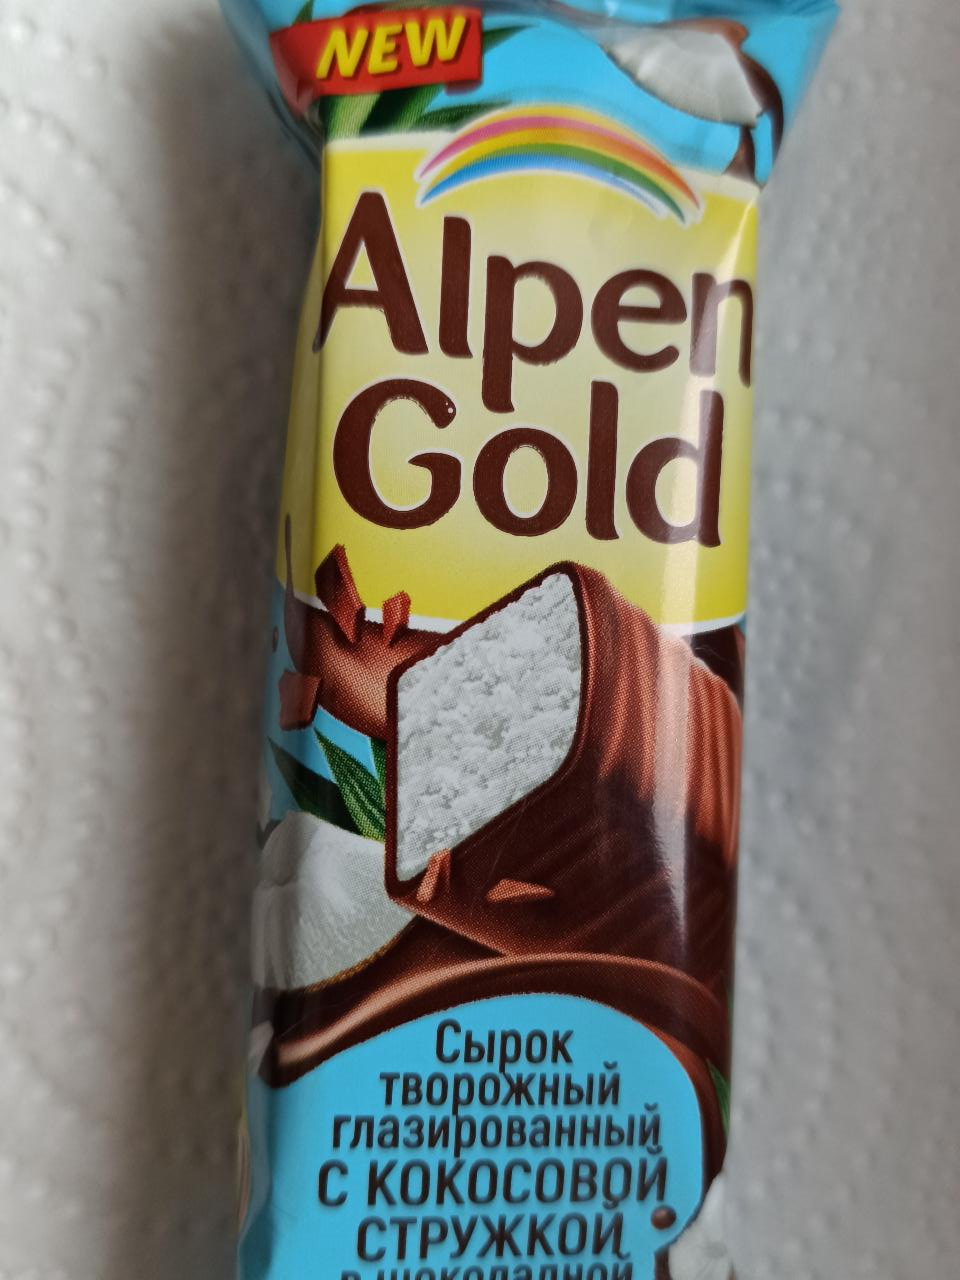 Фото - Сырок творожный глазированный с кокосовой стружкой в шоколадной глазури Alpen Gold